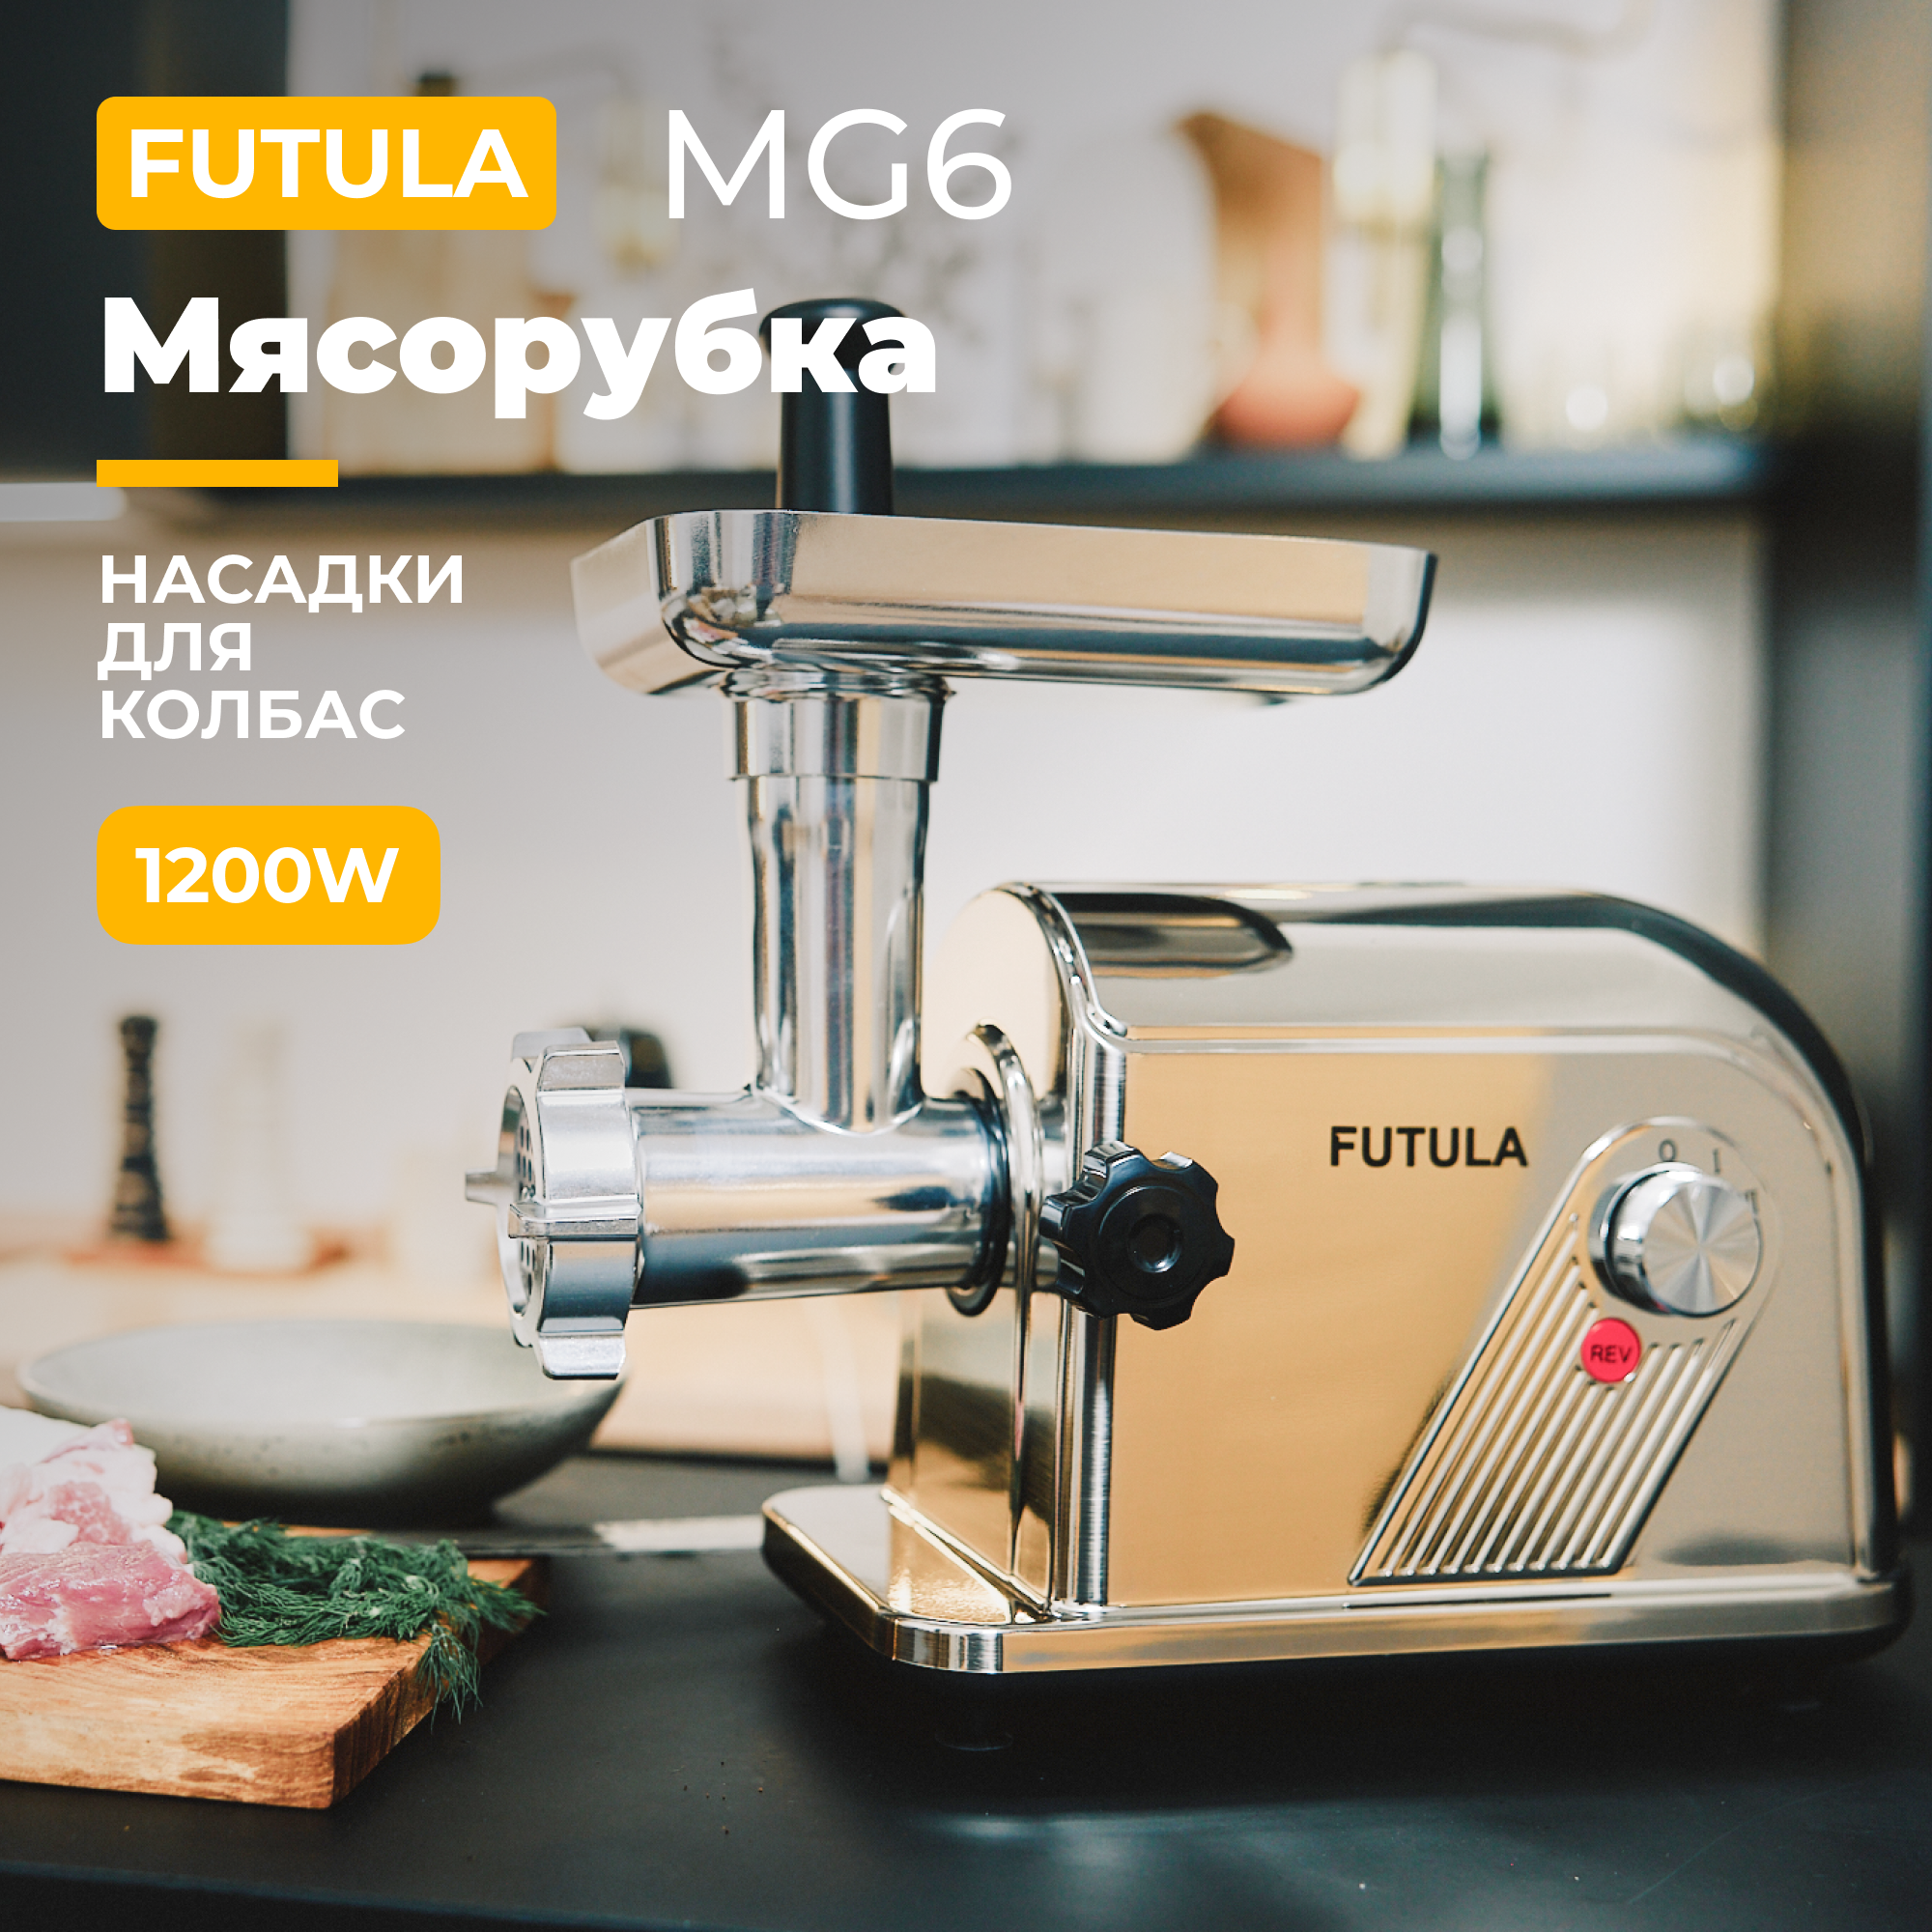 Электромясорубка Futula MG6 700 Вт серебристый многофункциональная портативная электрическая коробка для завтрака